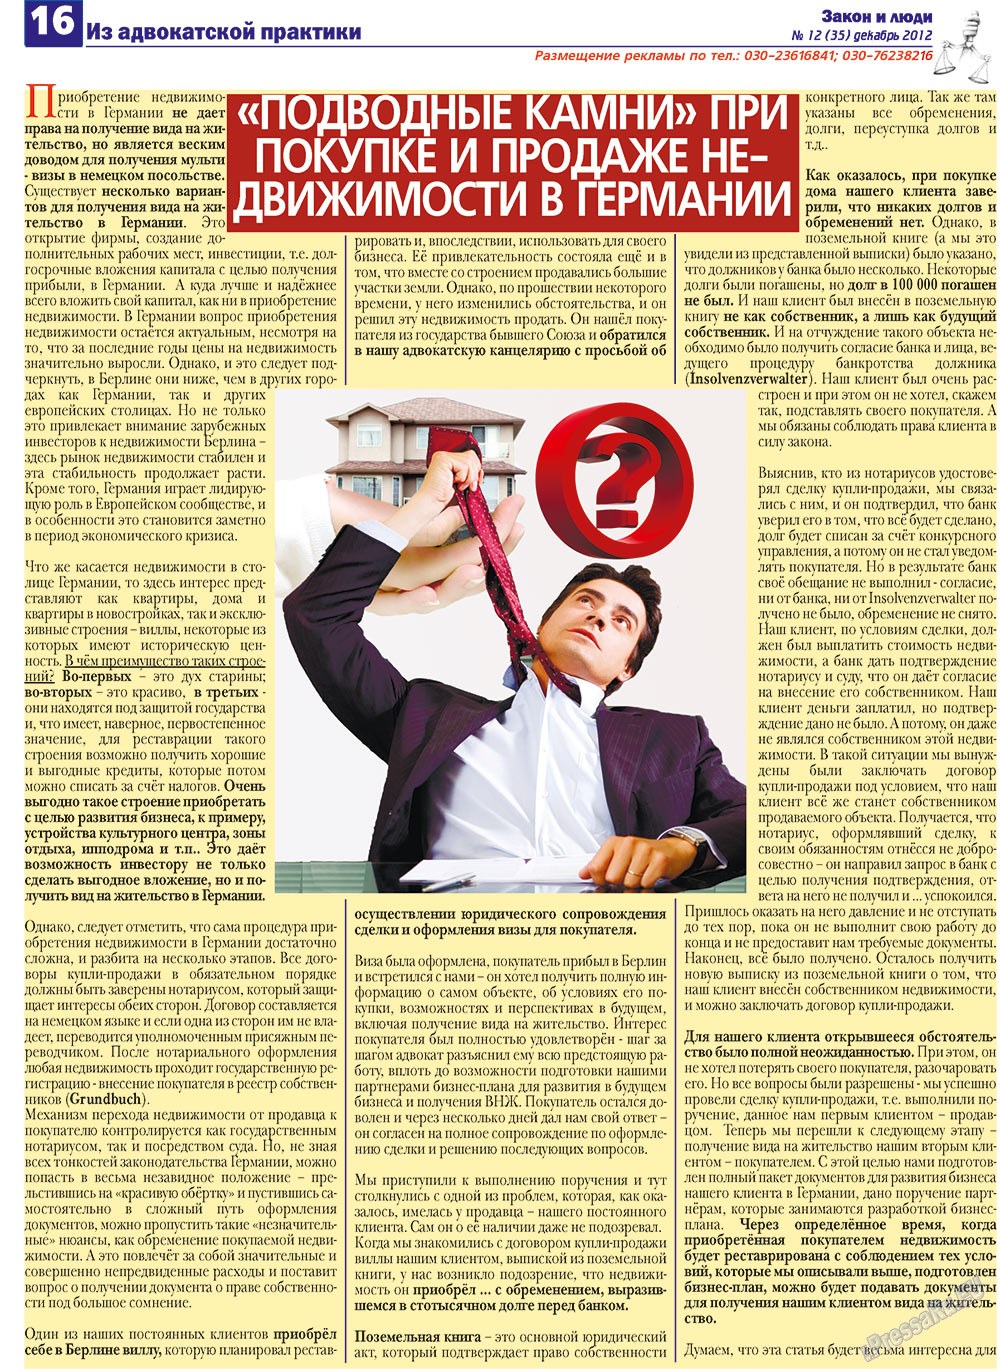 Закон и люди, газета. 2012 №12 стр.16